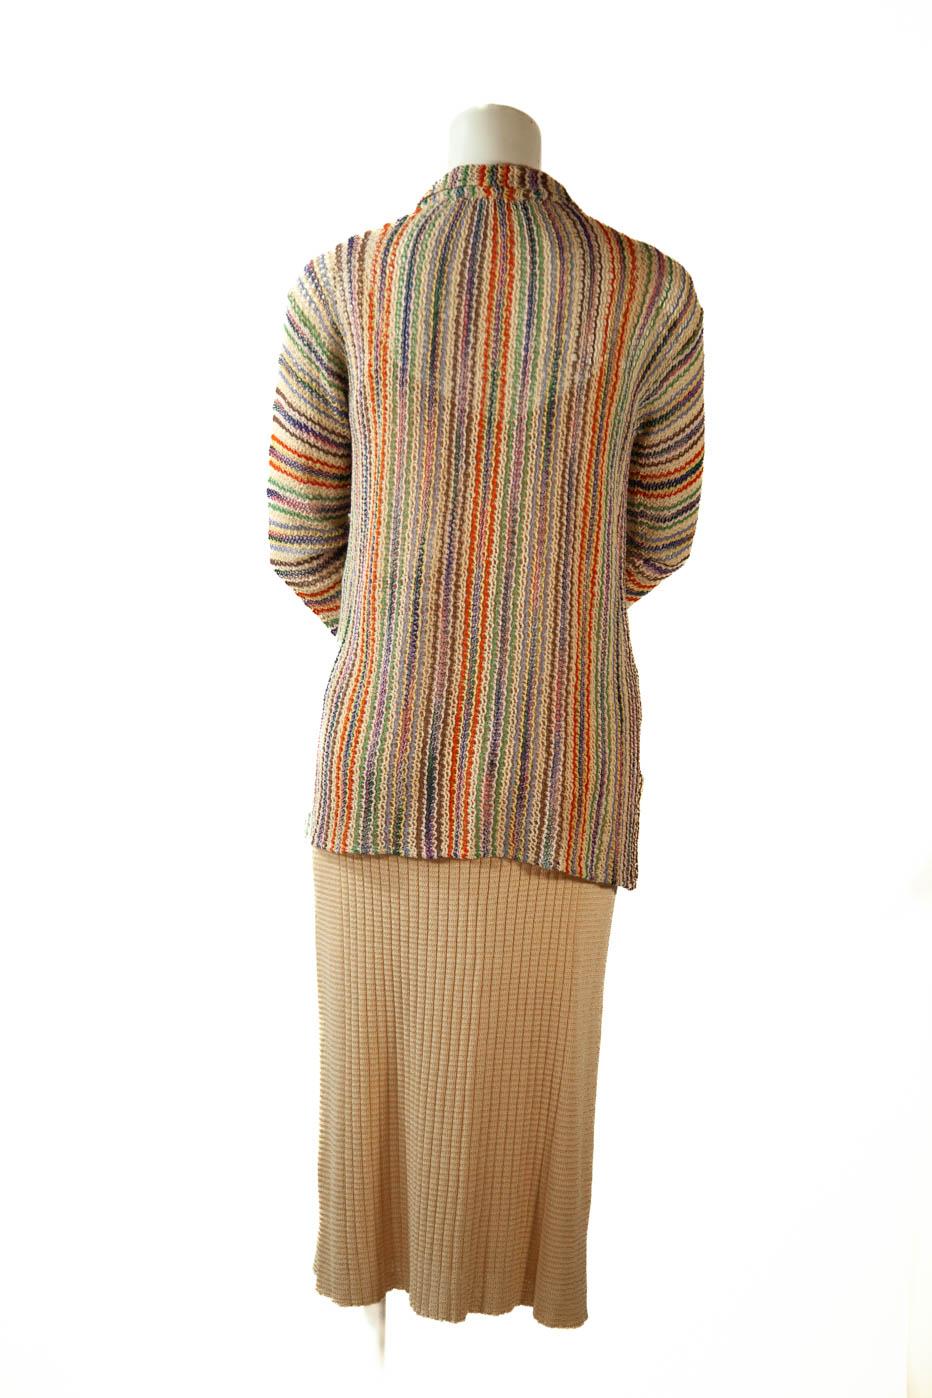 valentino 1973 chevron stripe cashmere sweater